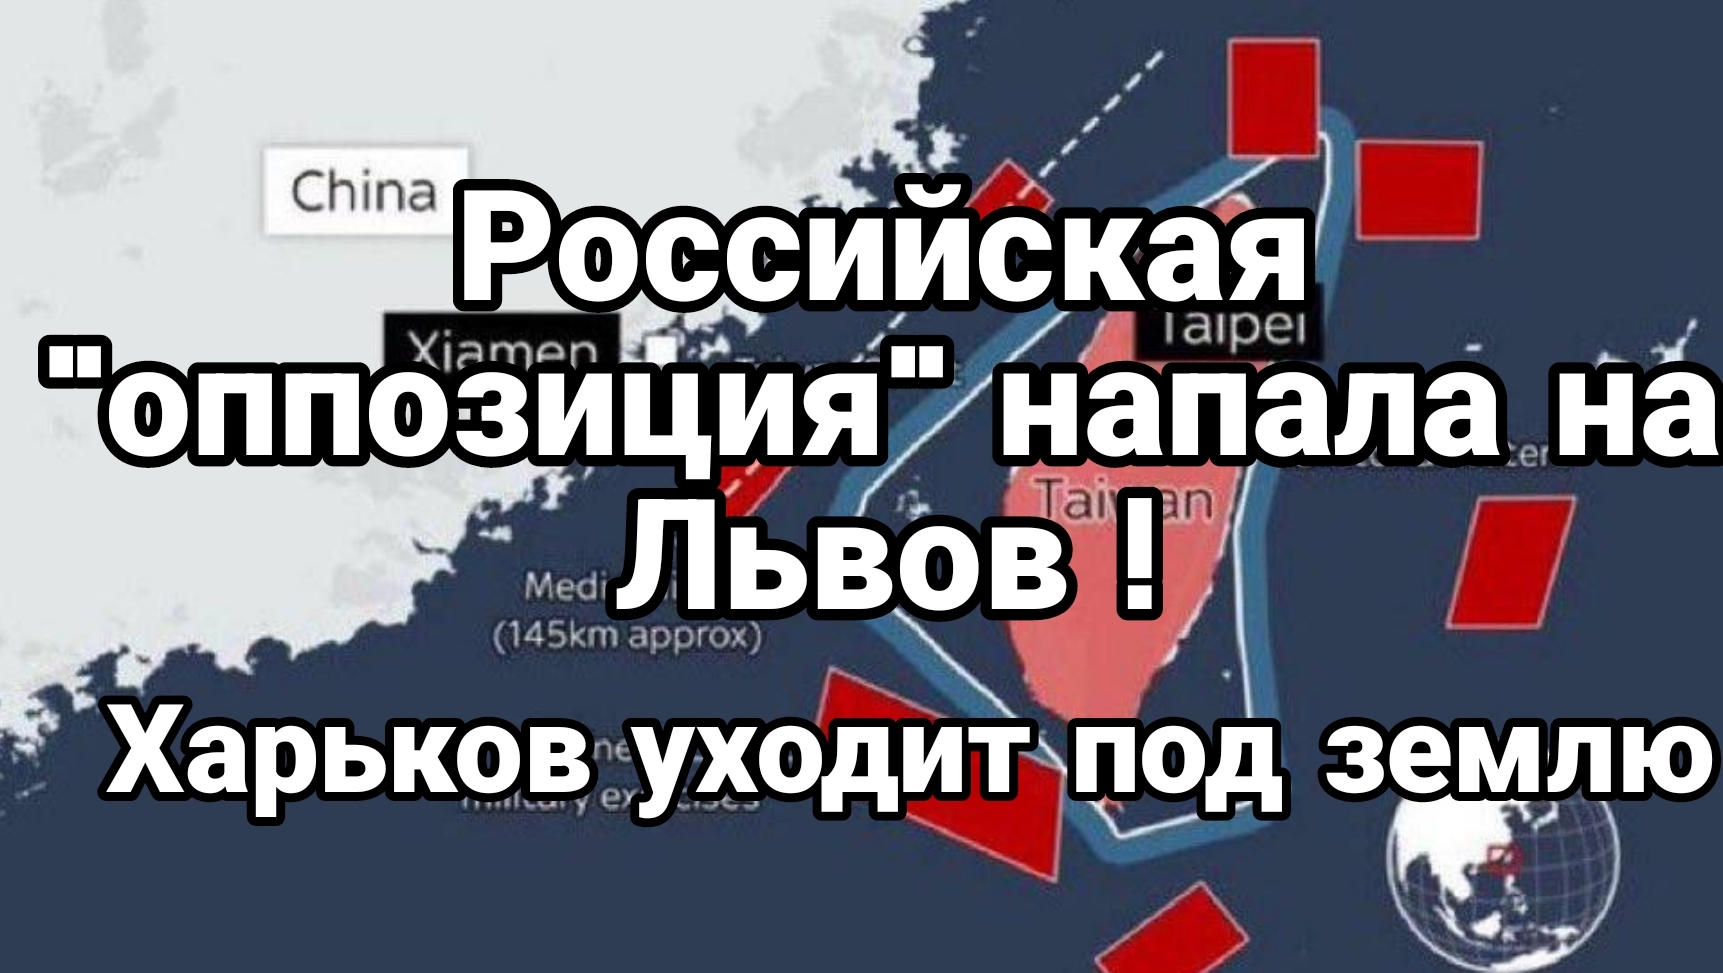 Российская "оппозиция" напала на Львов! Харьков уходит под землю